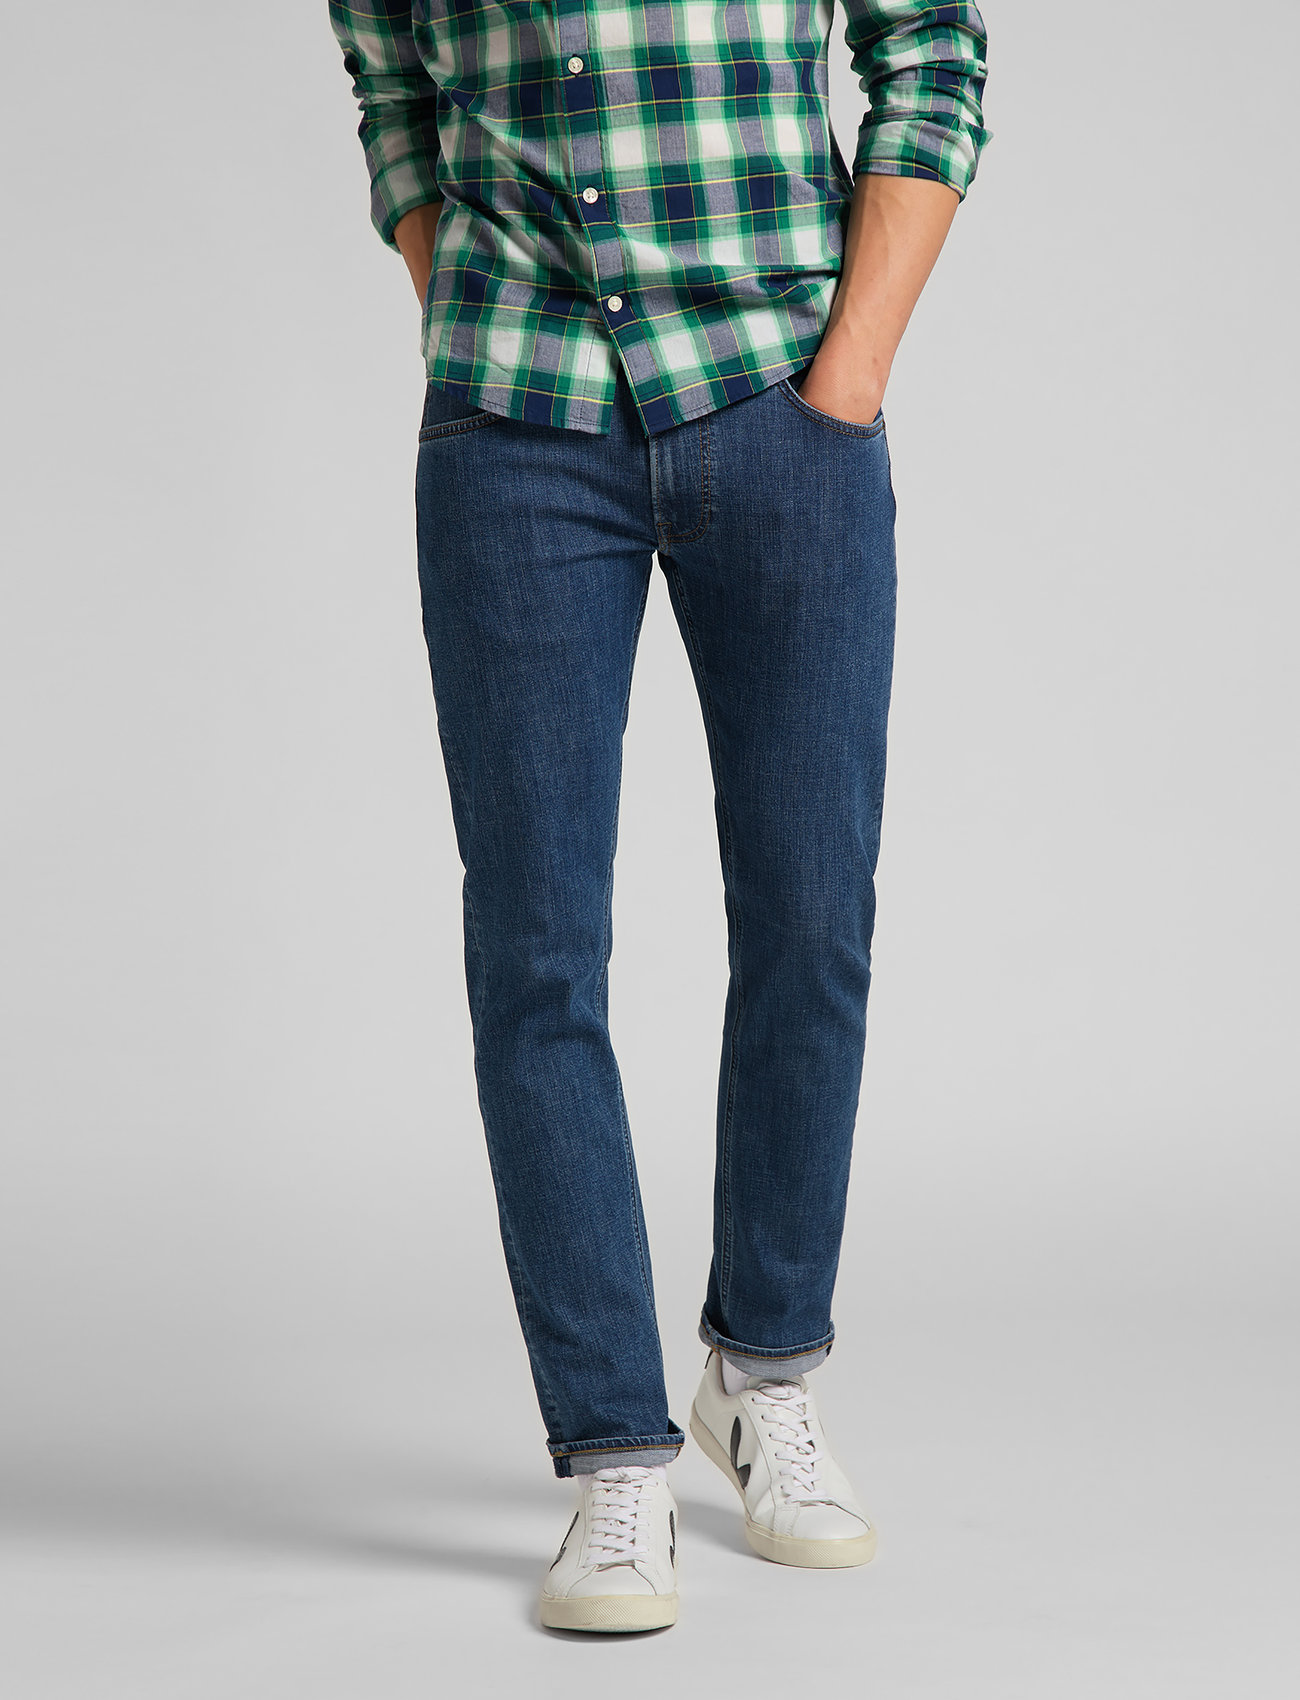 Weven schudden Minder dan Lee Jeans Daren Zip Fly - Regular jeans - Boozt.com